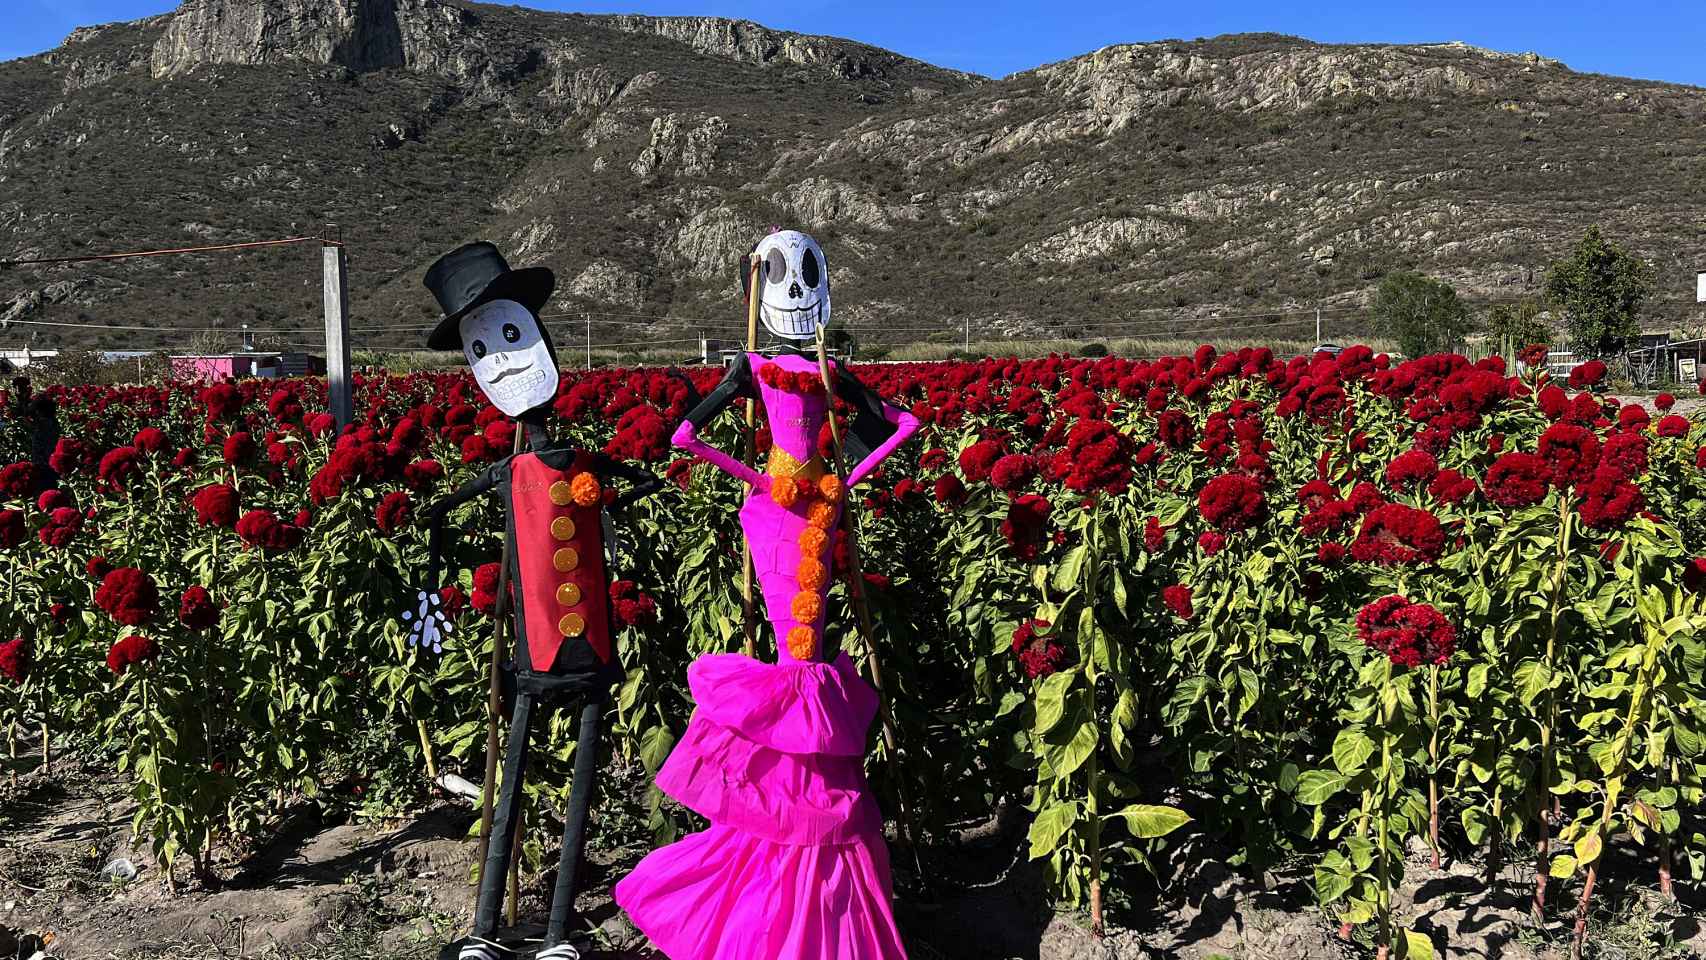 Fotografía de una catrina gigante en un campo de flor de cempasúchil, usada tradicionalmente para adornar altares, ofrendas y tumbas en temporada de Día de Muertos.